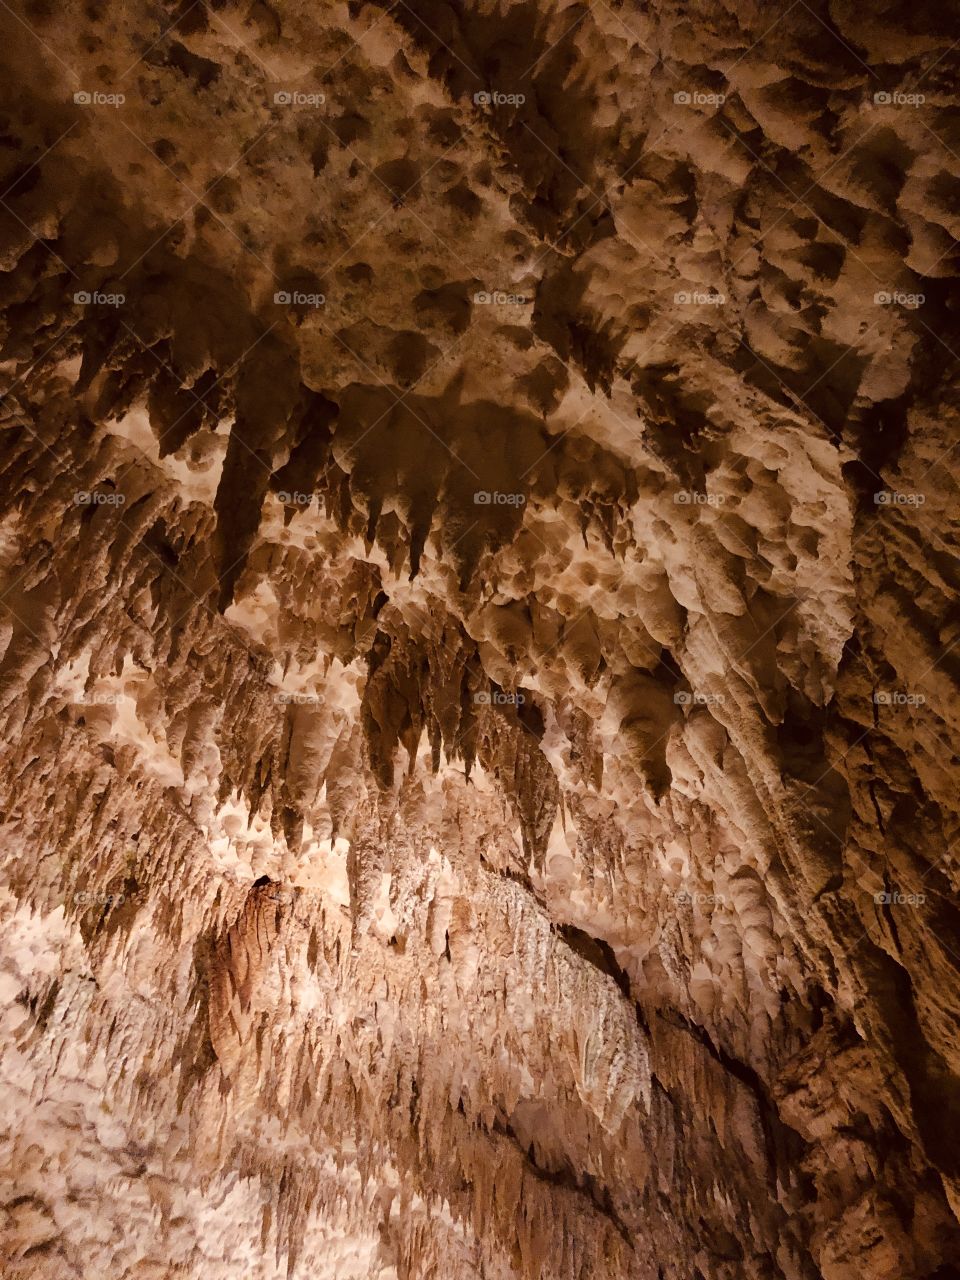 Mesmerizing stalagmite and stalactite formations of Okinawa’s largest underworld formation - Gyokusendo Cave, Nanjo City